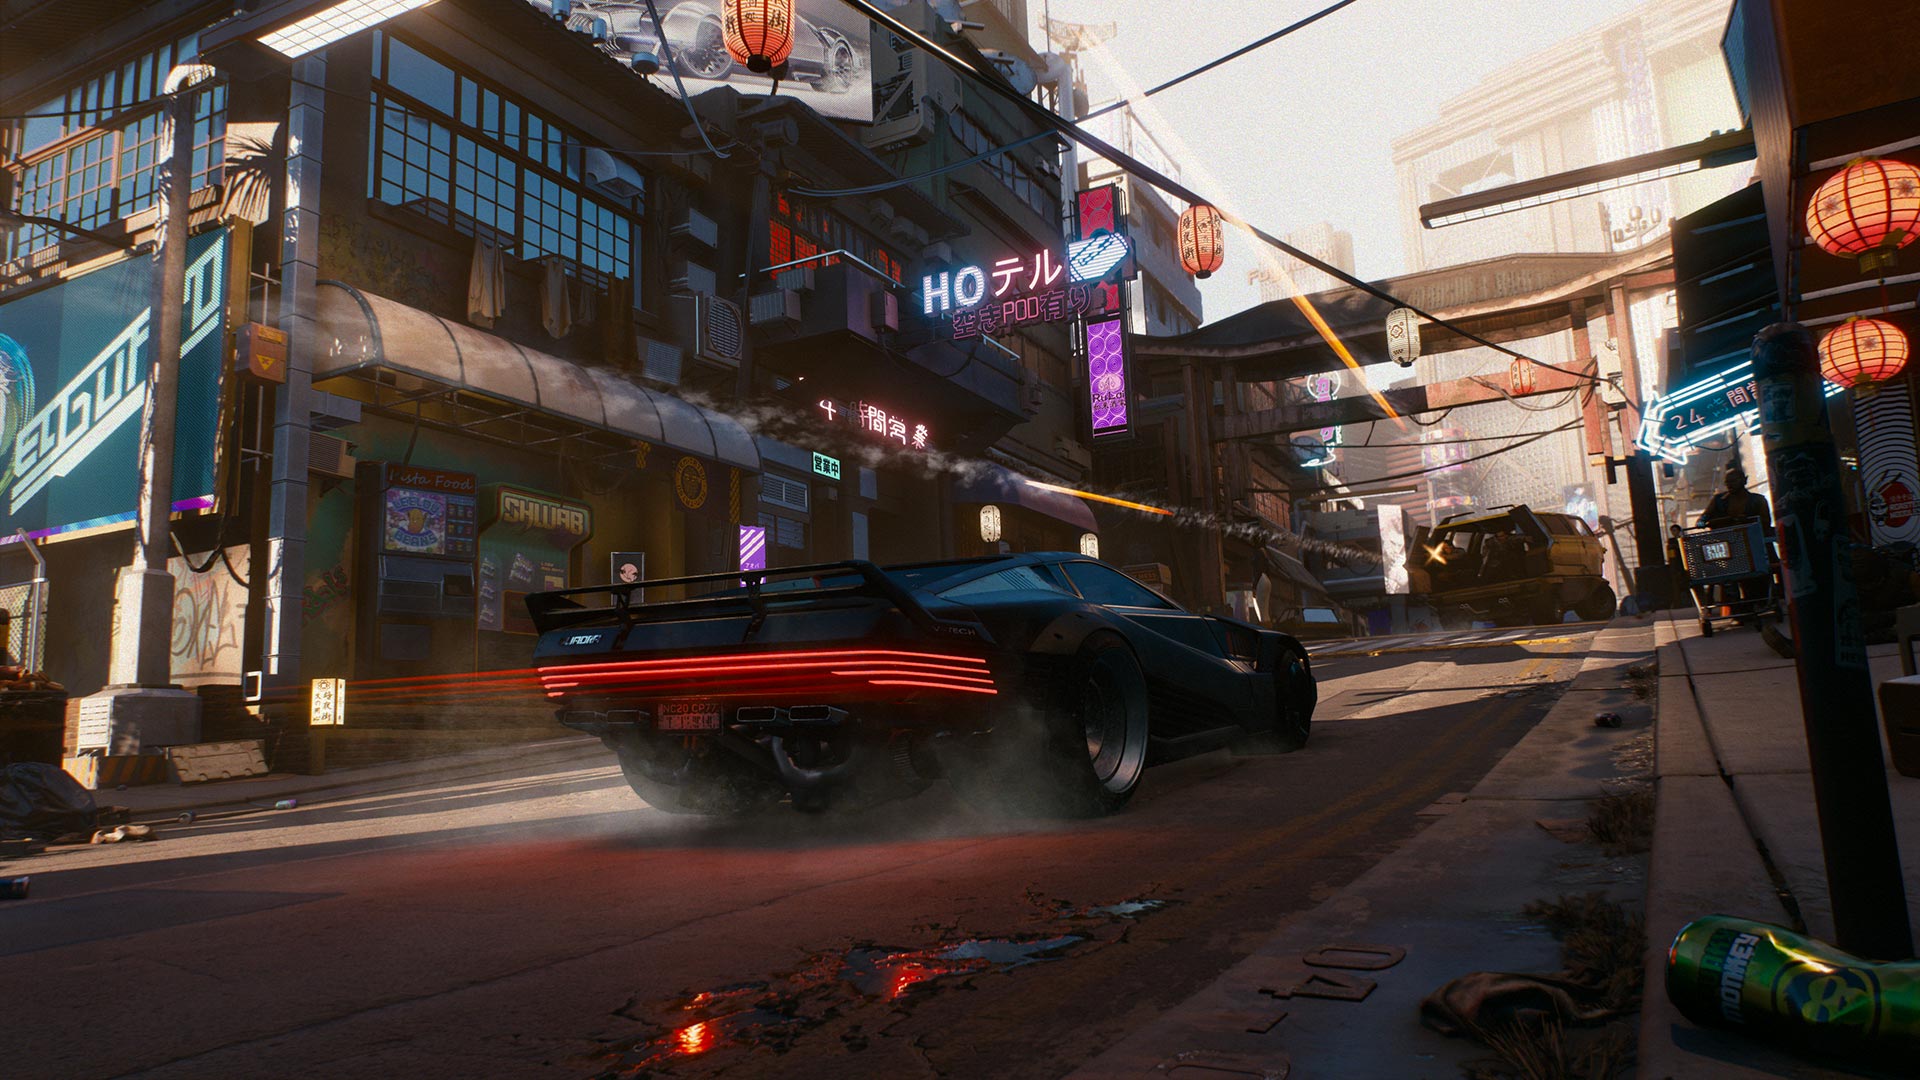 Cyberpunk 2077 RT Overdrive Mode trailer lights up Night City